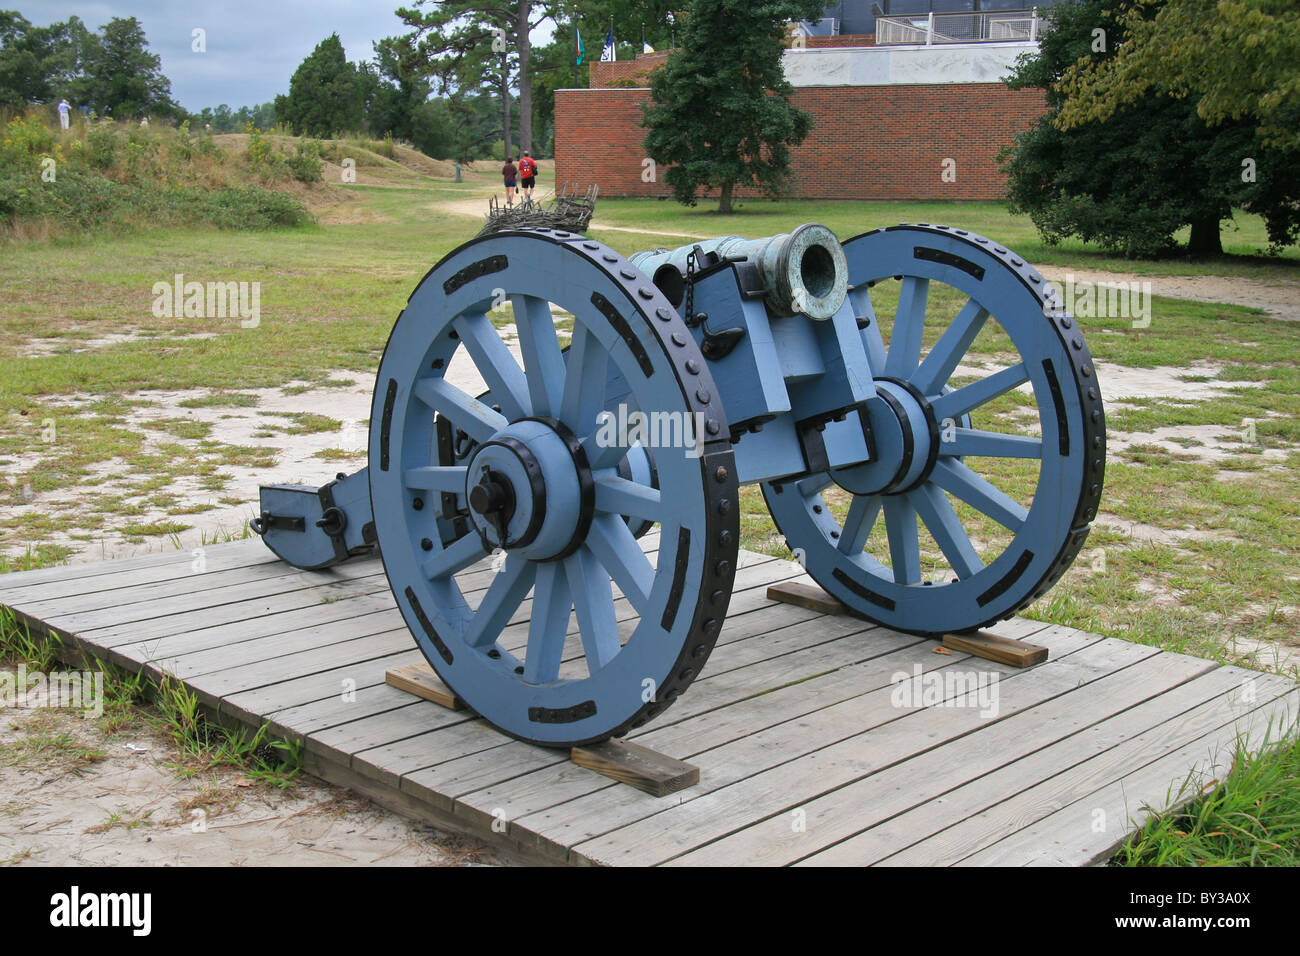 Une pièce d'artillerie de la guerre d'Indépendance américaine, de la bataille de Yorktown en 1781. Parc historique national de l'époque coloniale. Banque D'Images